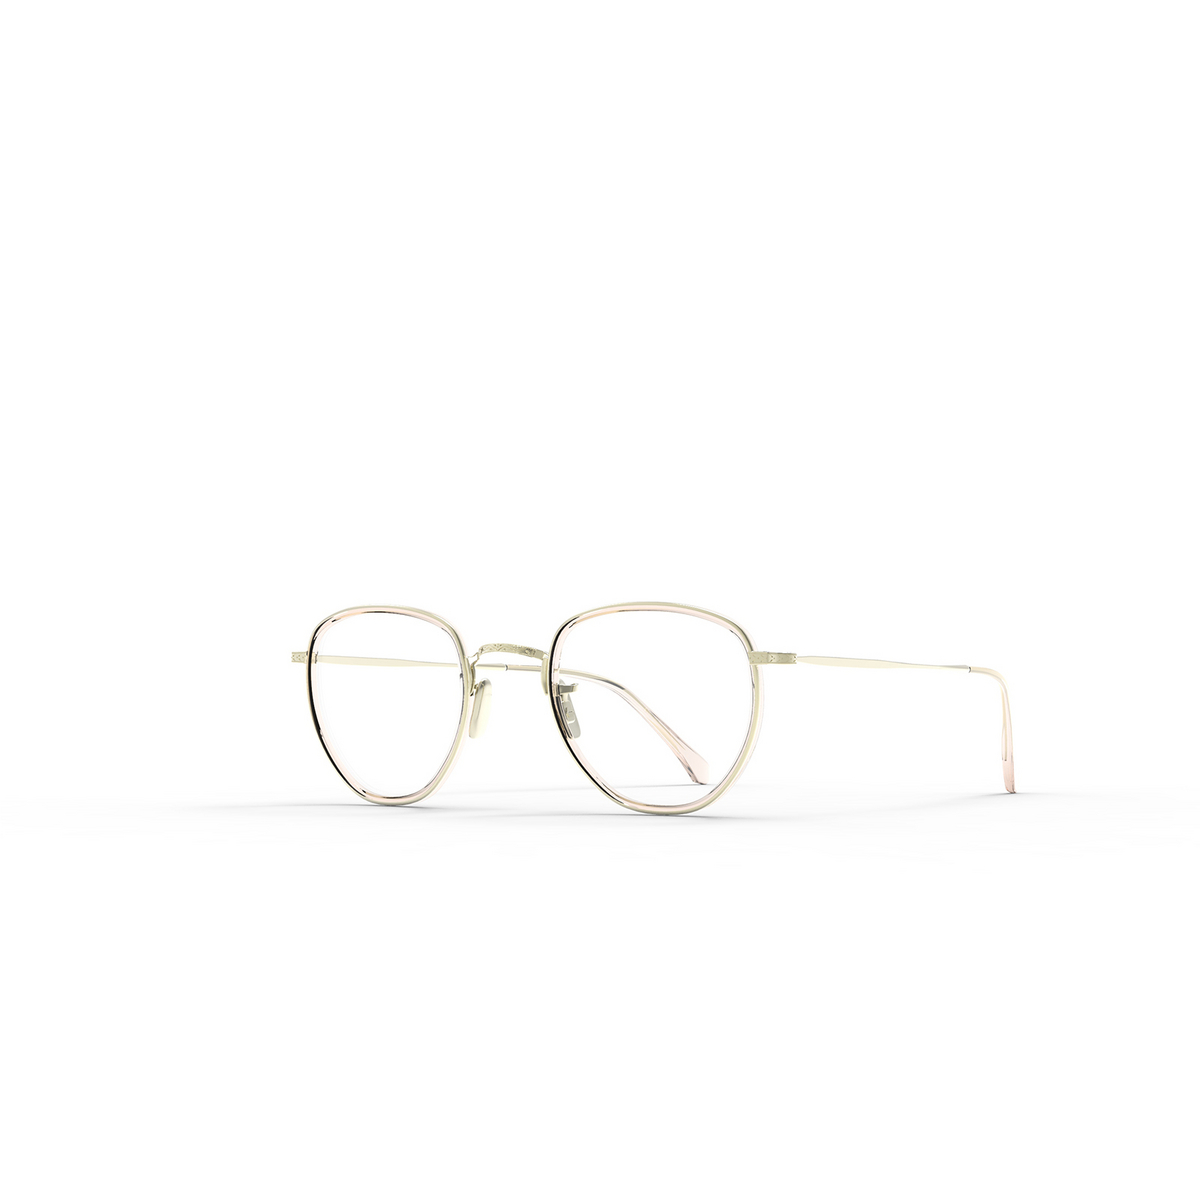 Mr. Leight ROKU C Eyeglasses LOM-12KG Lomita-12K White Gold - three-quarters view